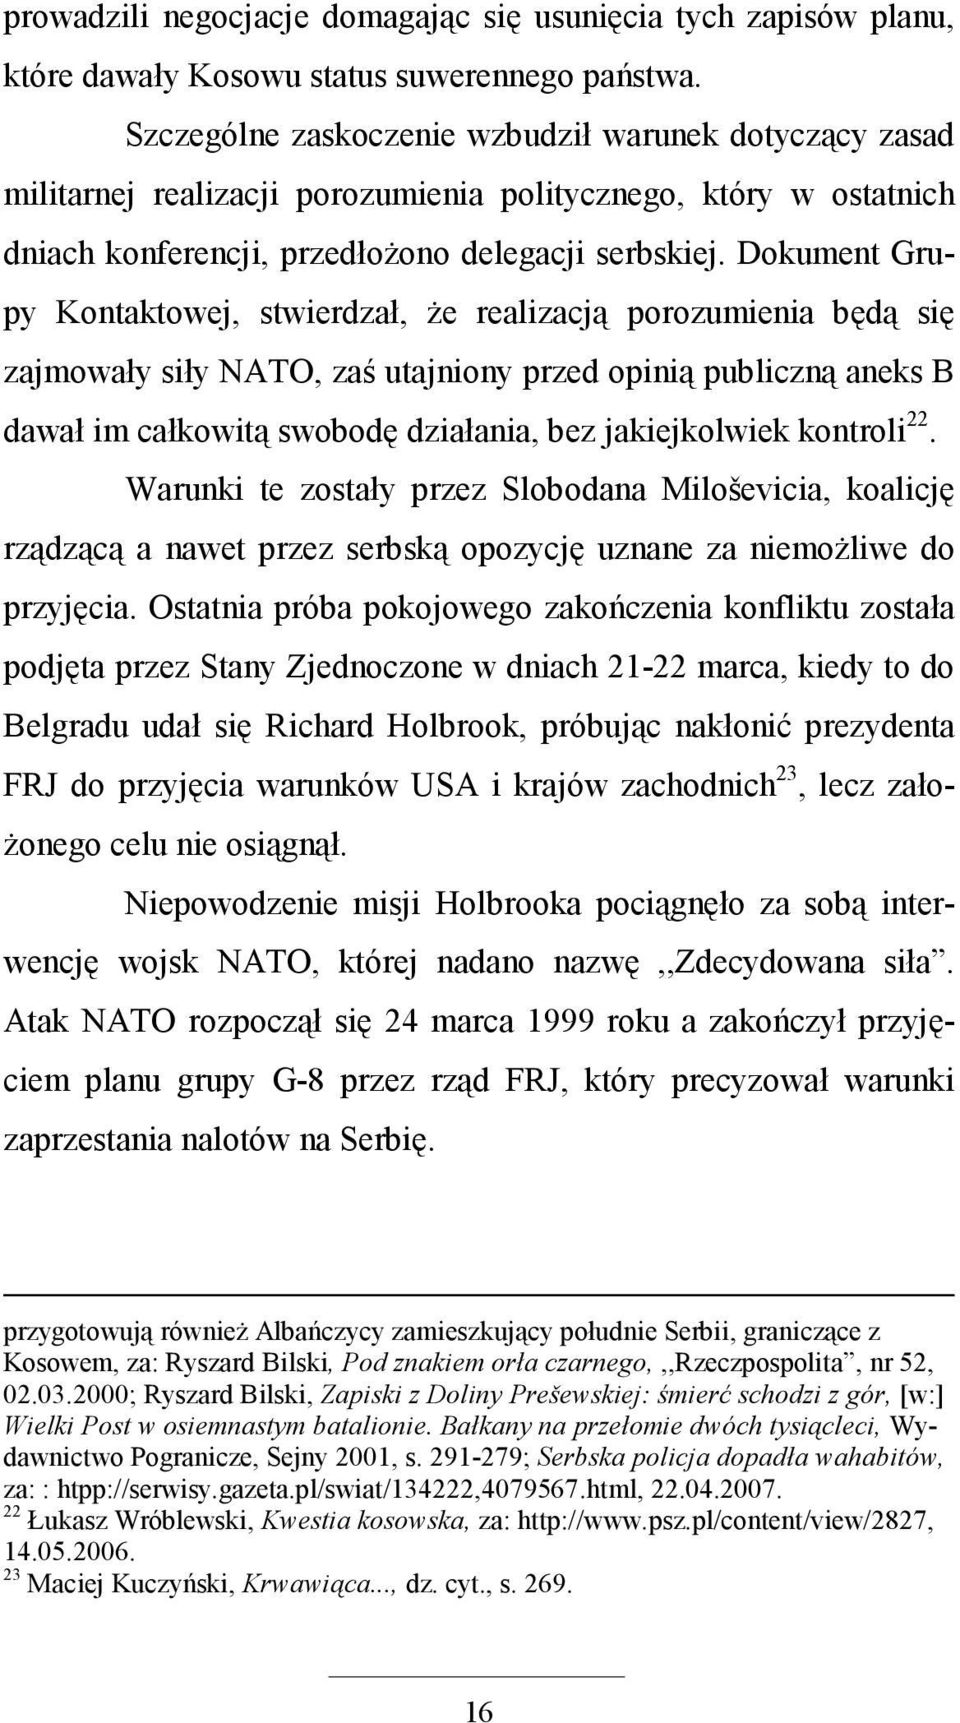 Dokument Grupy Kontaktowej, stwierdzał, Ŝe realizacją porozumienia będą się zajmowały siły NATO, zaś utajniony przed opinią publiczną aneks B dawał im całkowitą swobodę działania, bez jakiejkolwiek